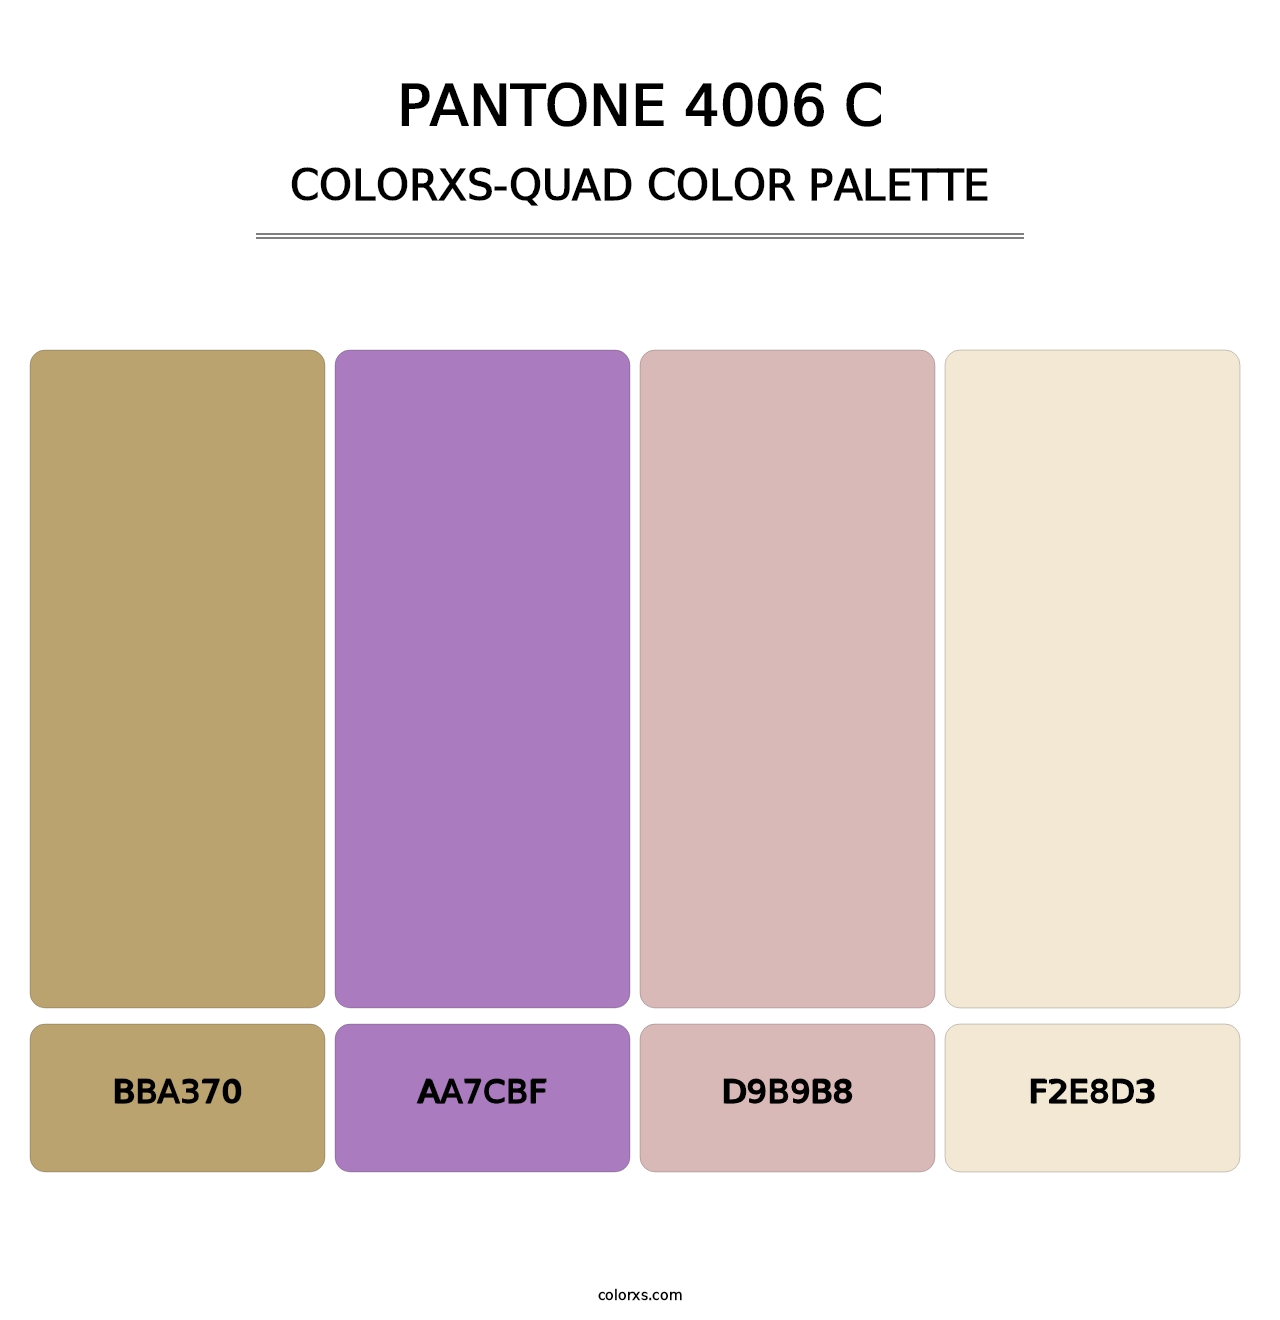 PANTONE 4006 C - Colorxs Quad Palette